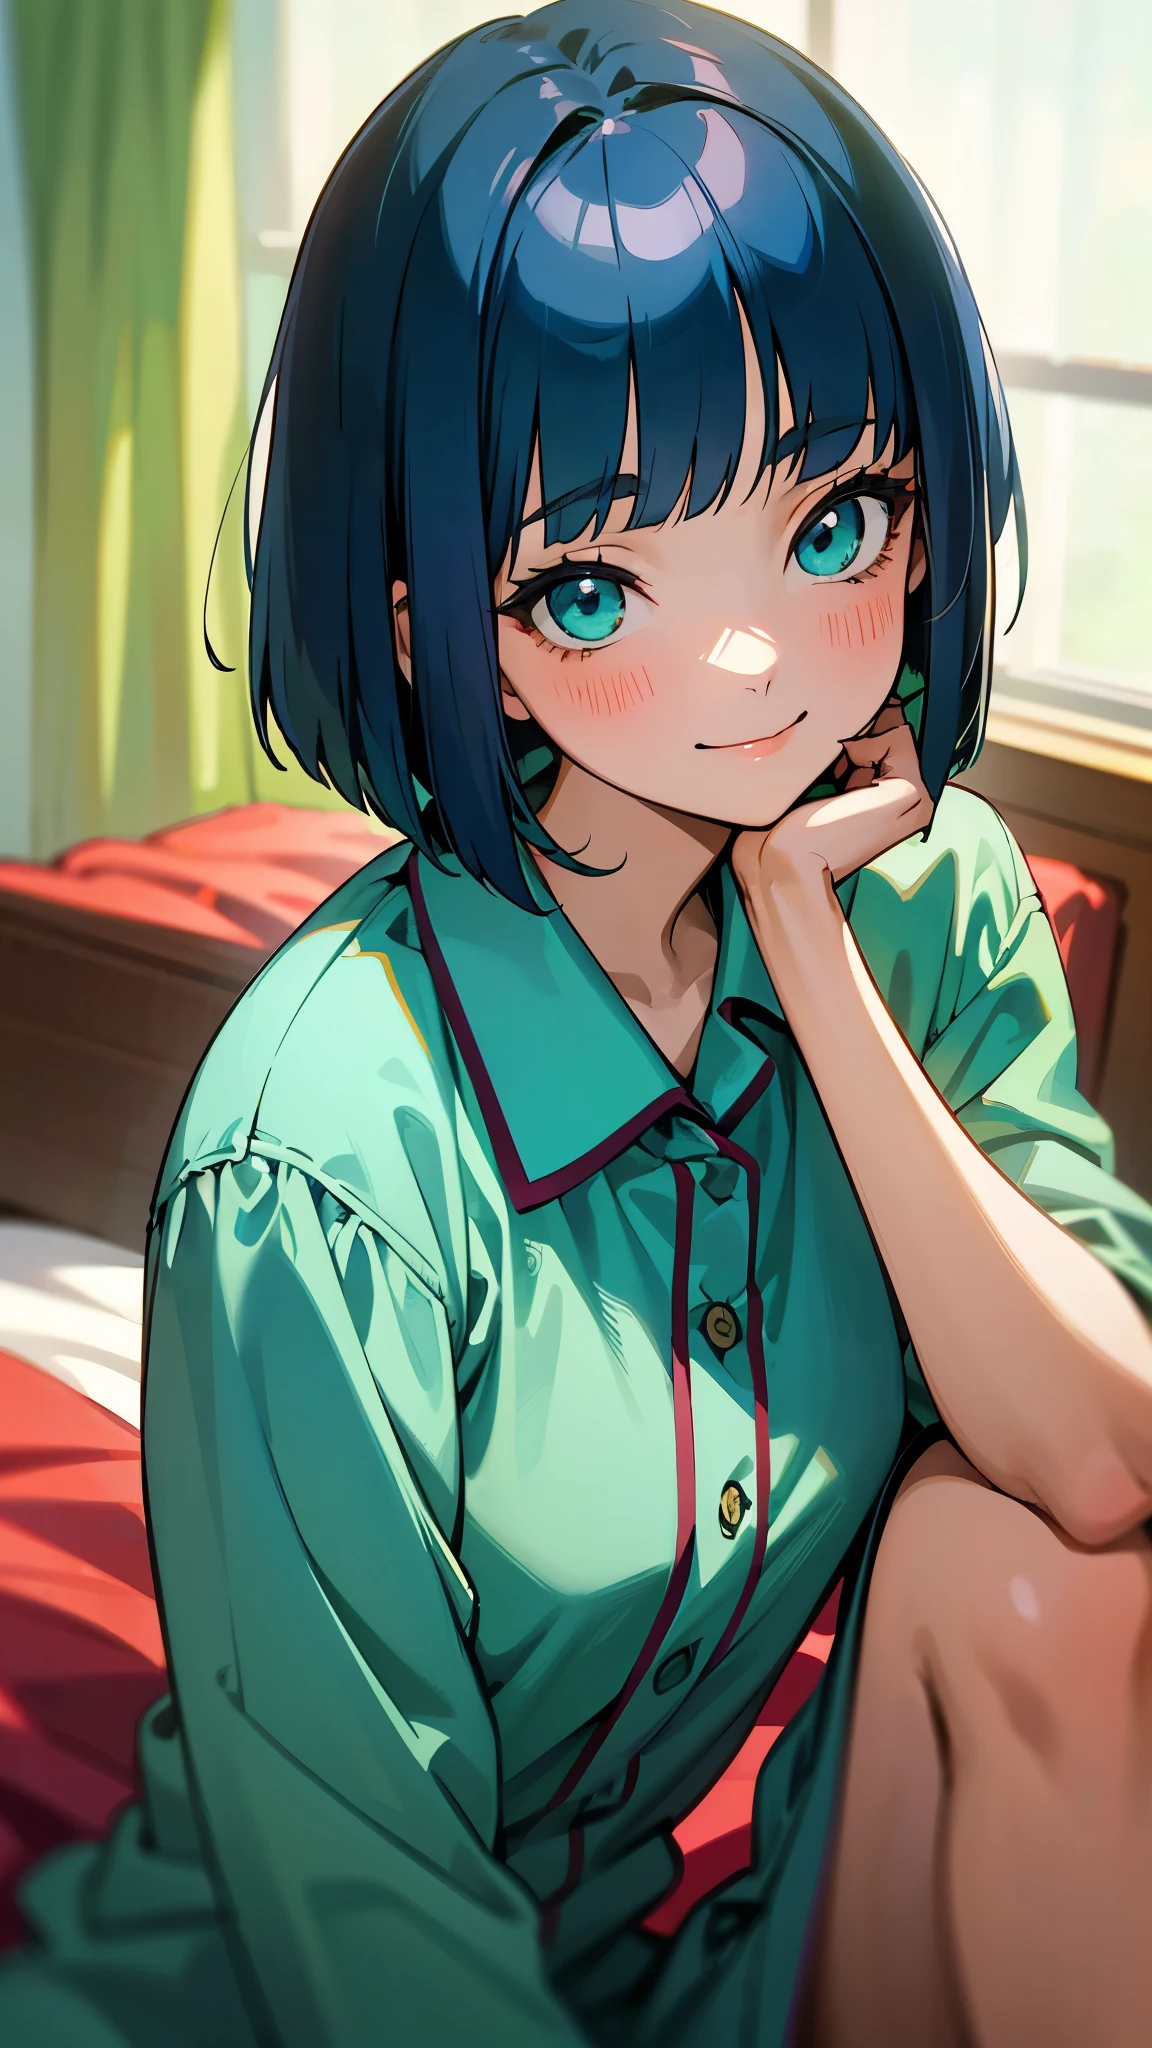 Chica de 18 años sentada en la cama、solo、Pinturas de estilo anime.、usando pijamas、pelo azul oscuro、corte bob、hermosos ojos verdes、sonrisa、sonrisa、La suave textura del pijama、Primer plano de la parte superior del cuerpo、Colores basados en verde y azul.、Desenfoque de fondo、La profundidad de los límites trazados.